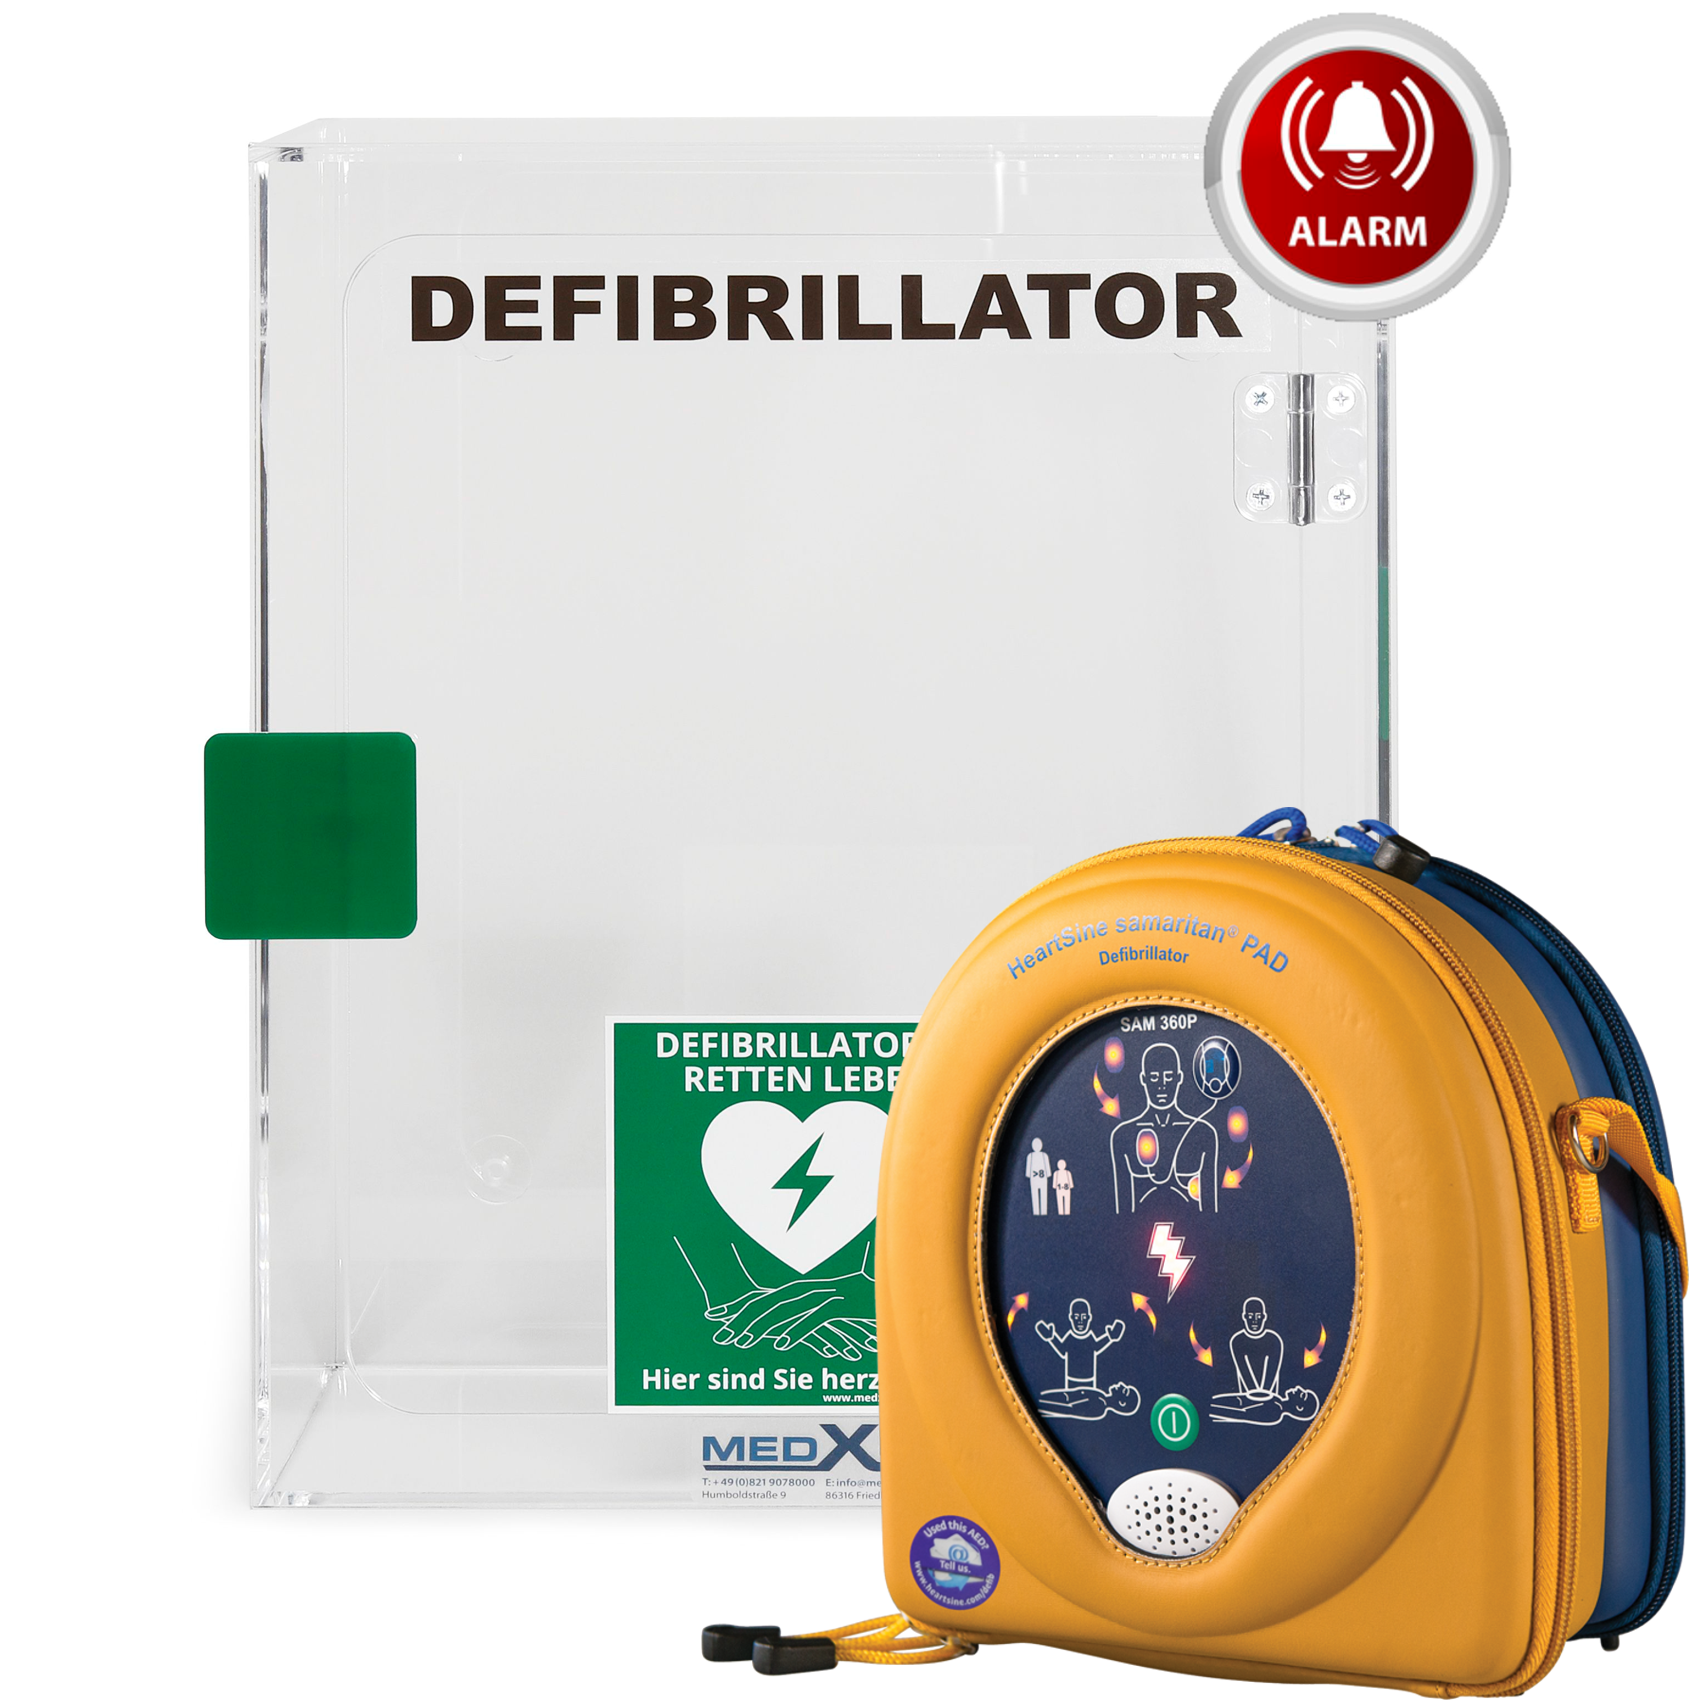 AED-Indoor-Paket mit Plexiglaswandkasten & HeartSine SAM360P Erste-Hilfe- & Laiendefibrillator